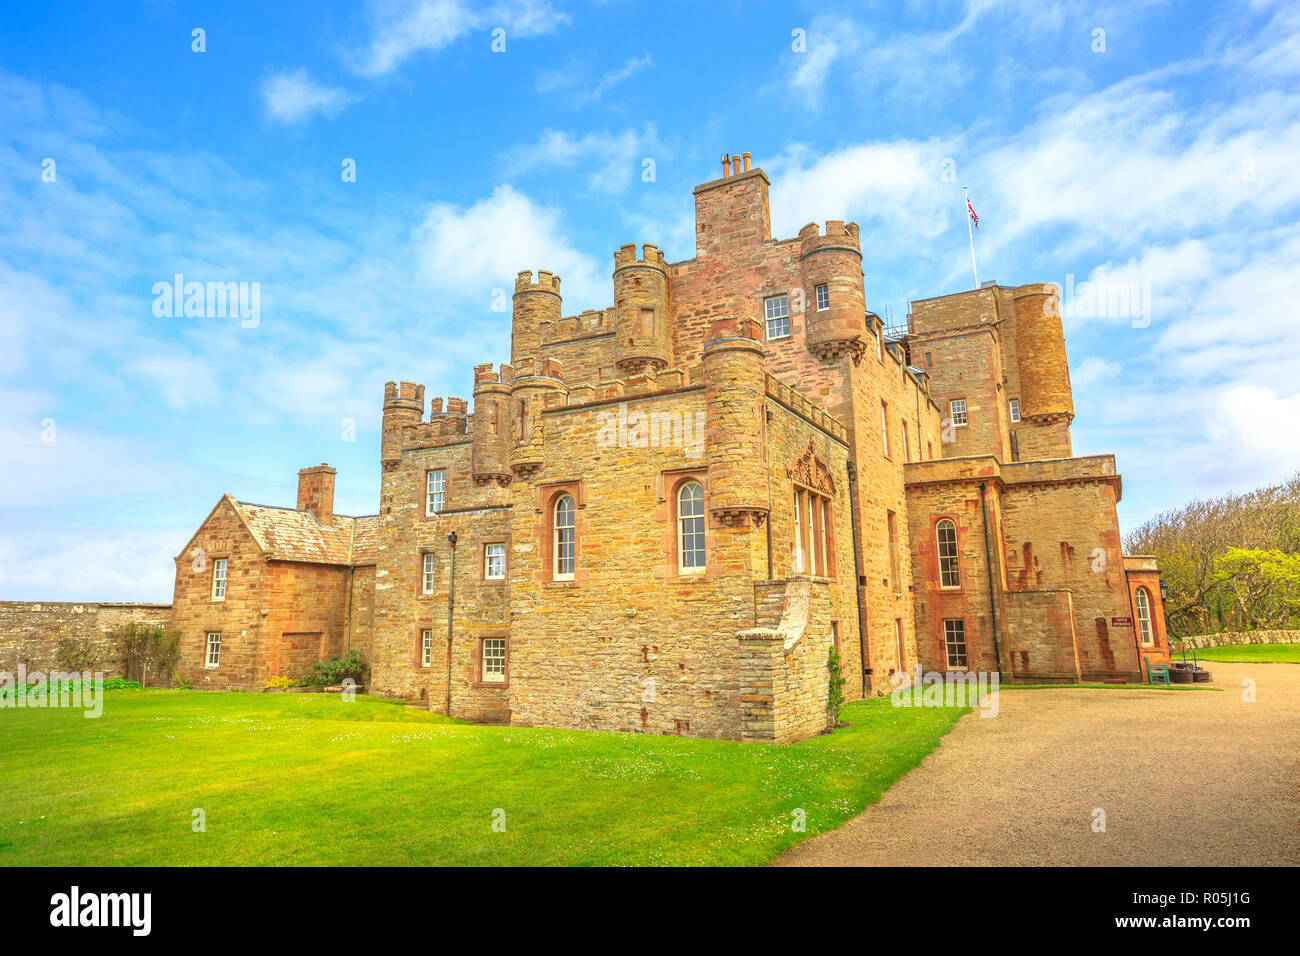 Château de Mey Barrogill de Thurso ville de la côte nord de l'Highland en Ecosse, Royaume-Uni. Château de Mey est un monument populaire et célèbre attraction touristique. Banque D'Images